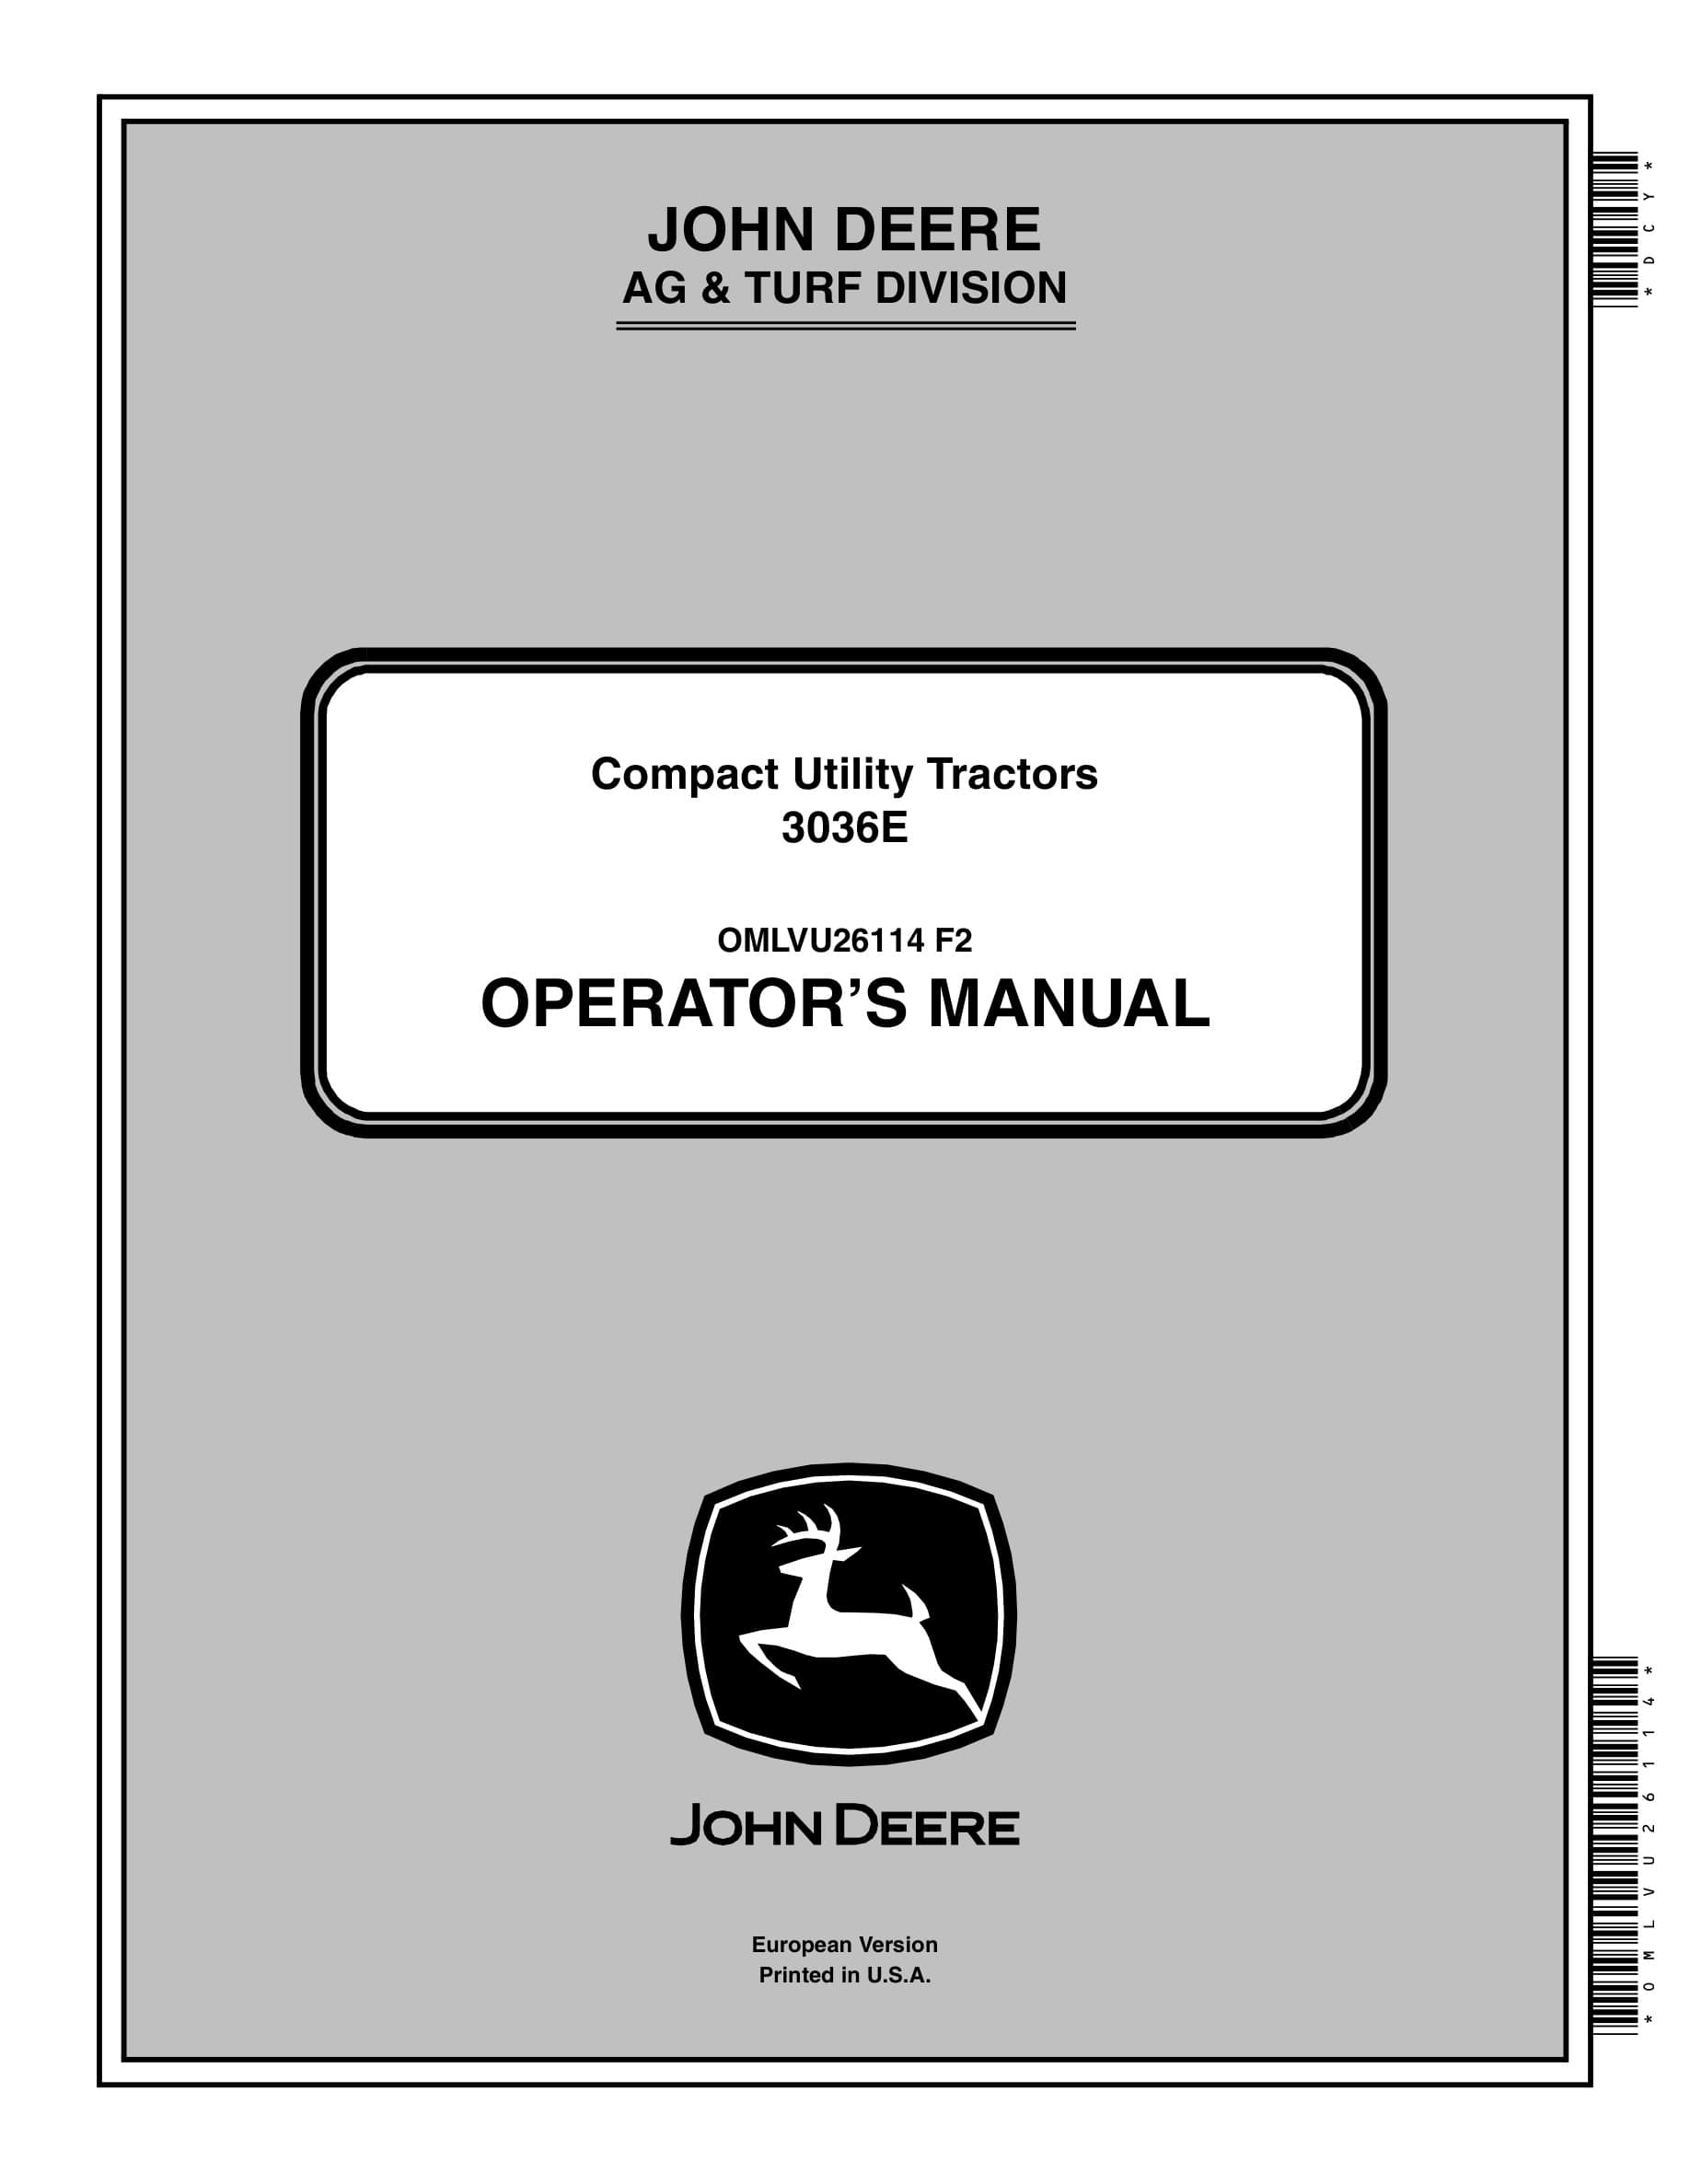 John Deere 3036e Compact Utility Tractors Operator Manuals OMLVU26114-1